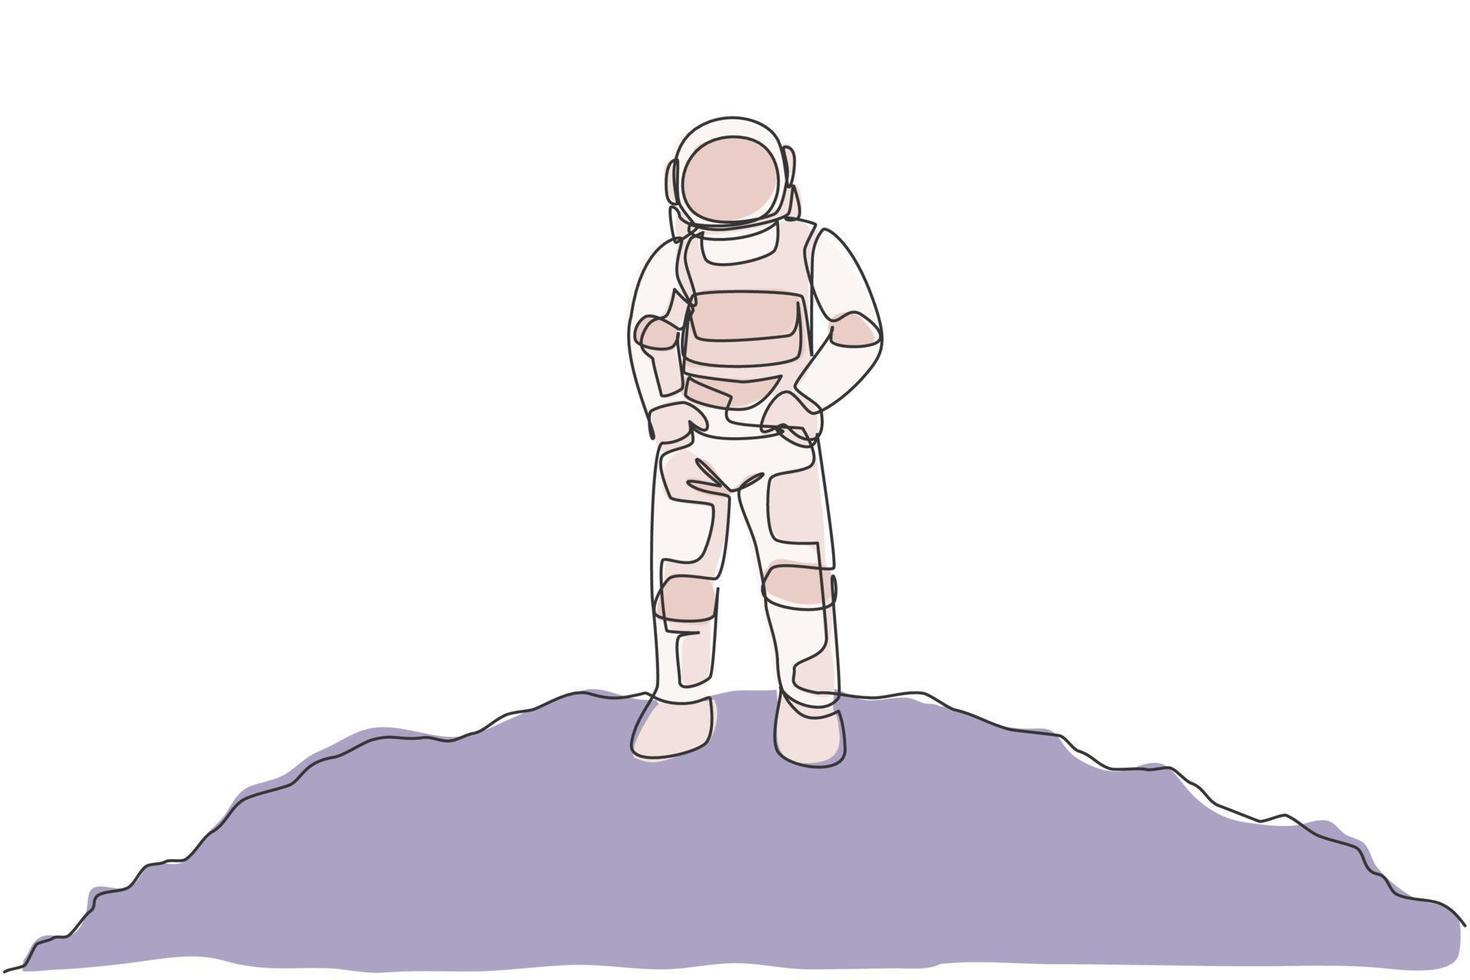 un disegno a tratteggio continuo di un giovane astronauta sulla tuta spaziale mette le mani in tasca sulla superficie lunare. ufficio affari astronauta con il concetto di spazio profondo. illustrazione vettoriale di disegno dinamico a linea singola